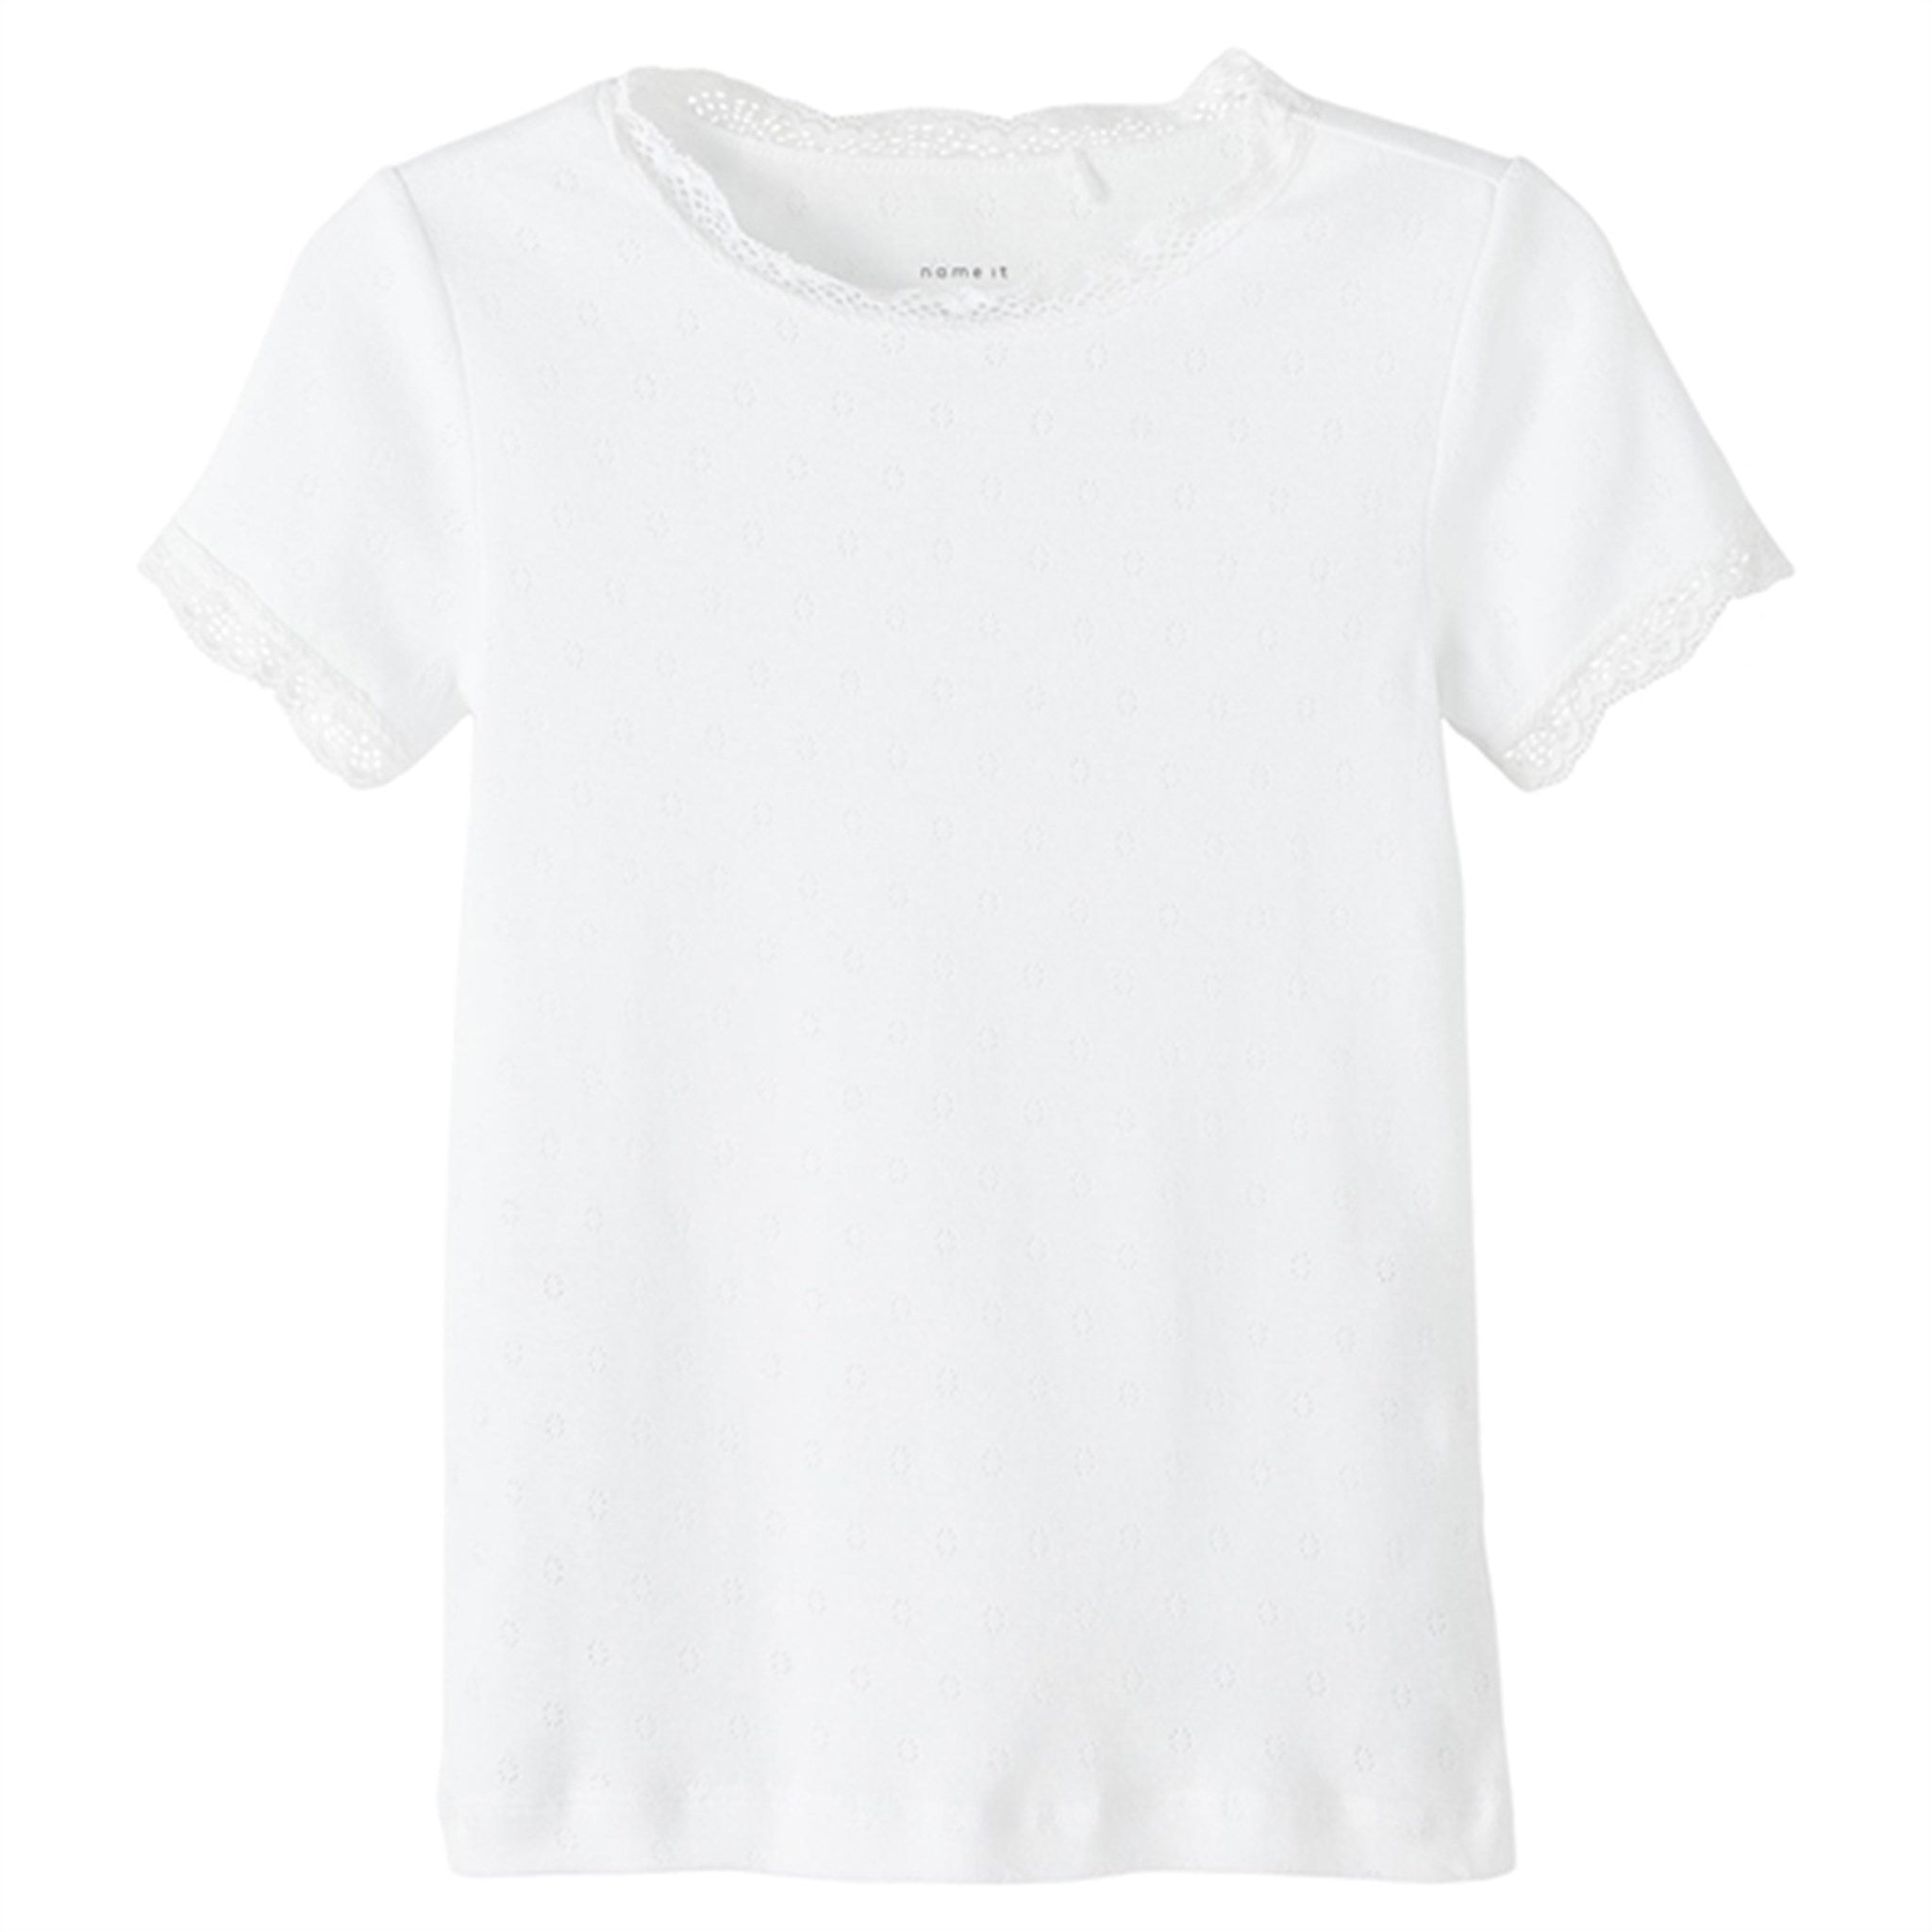 Name it Bright White Fraluna Slim T-Shirt